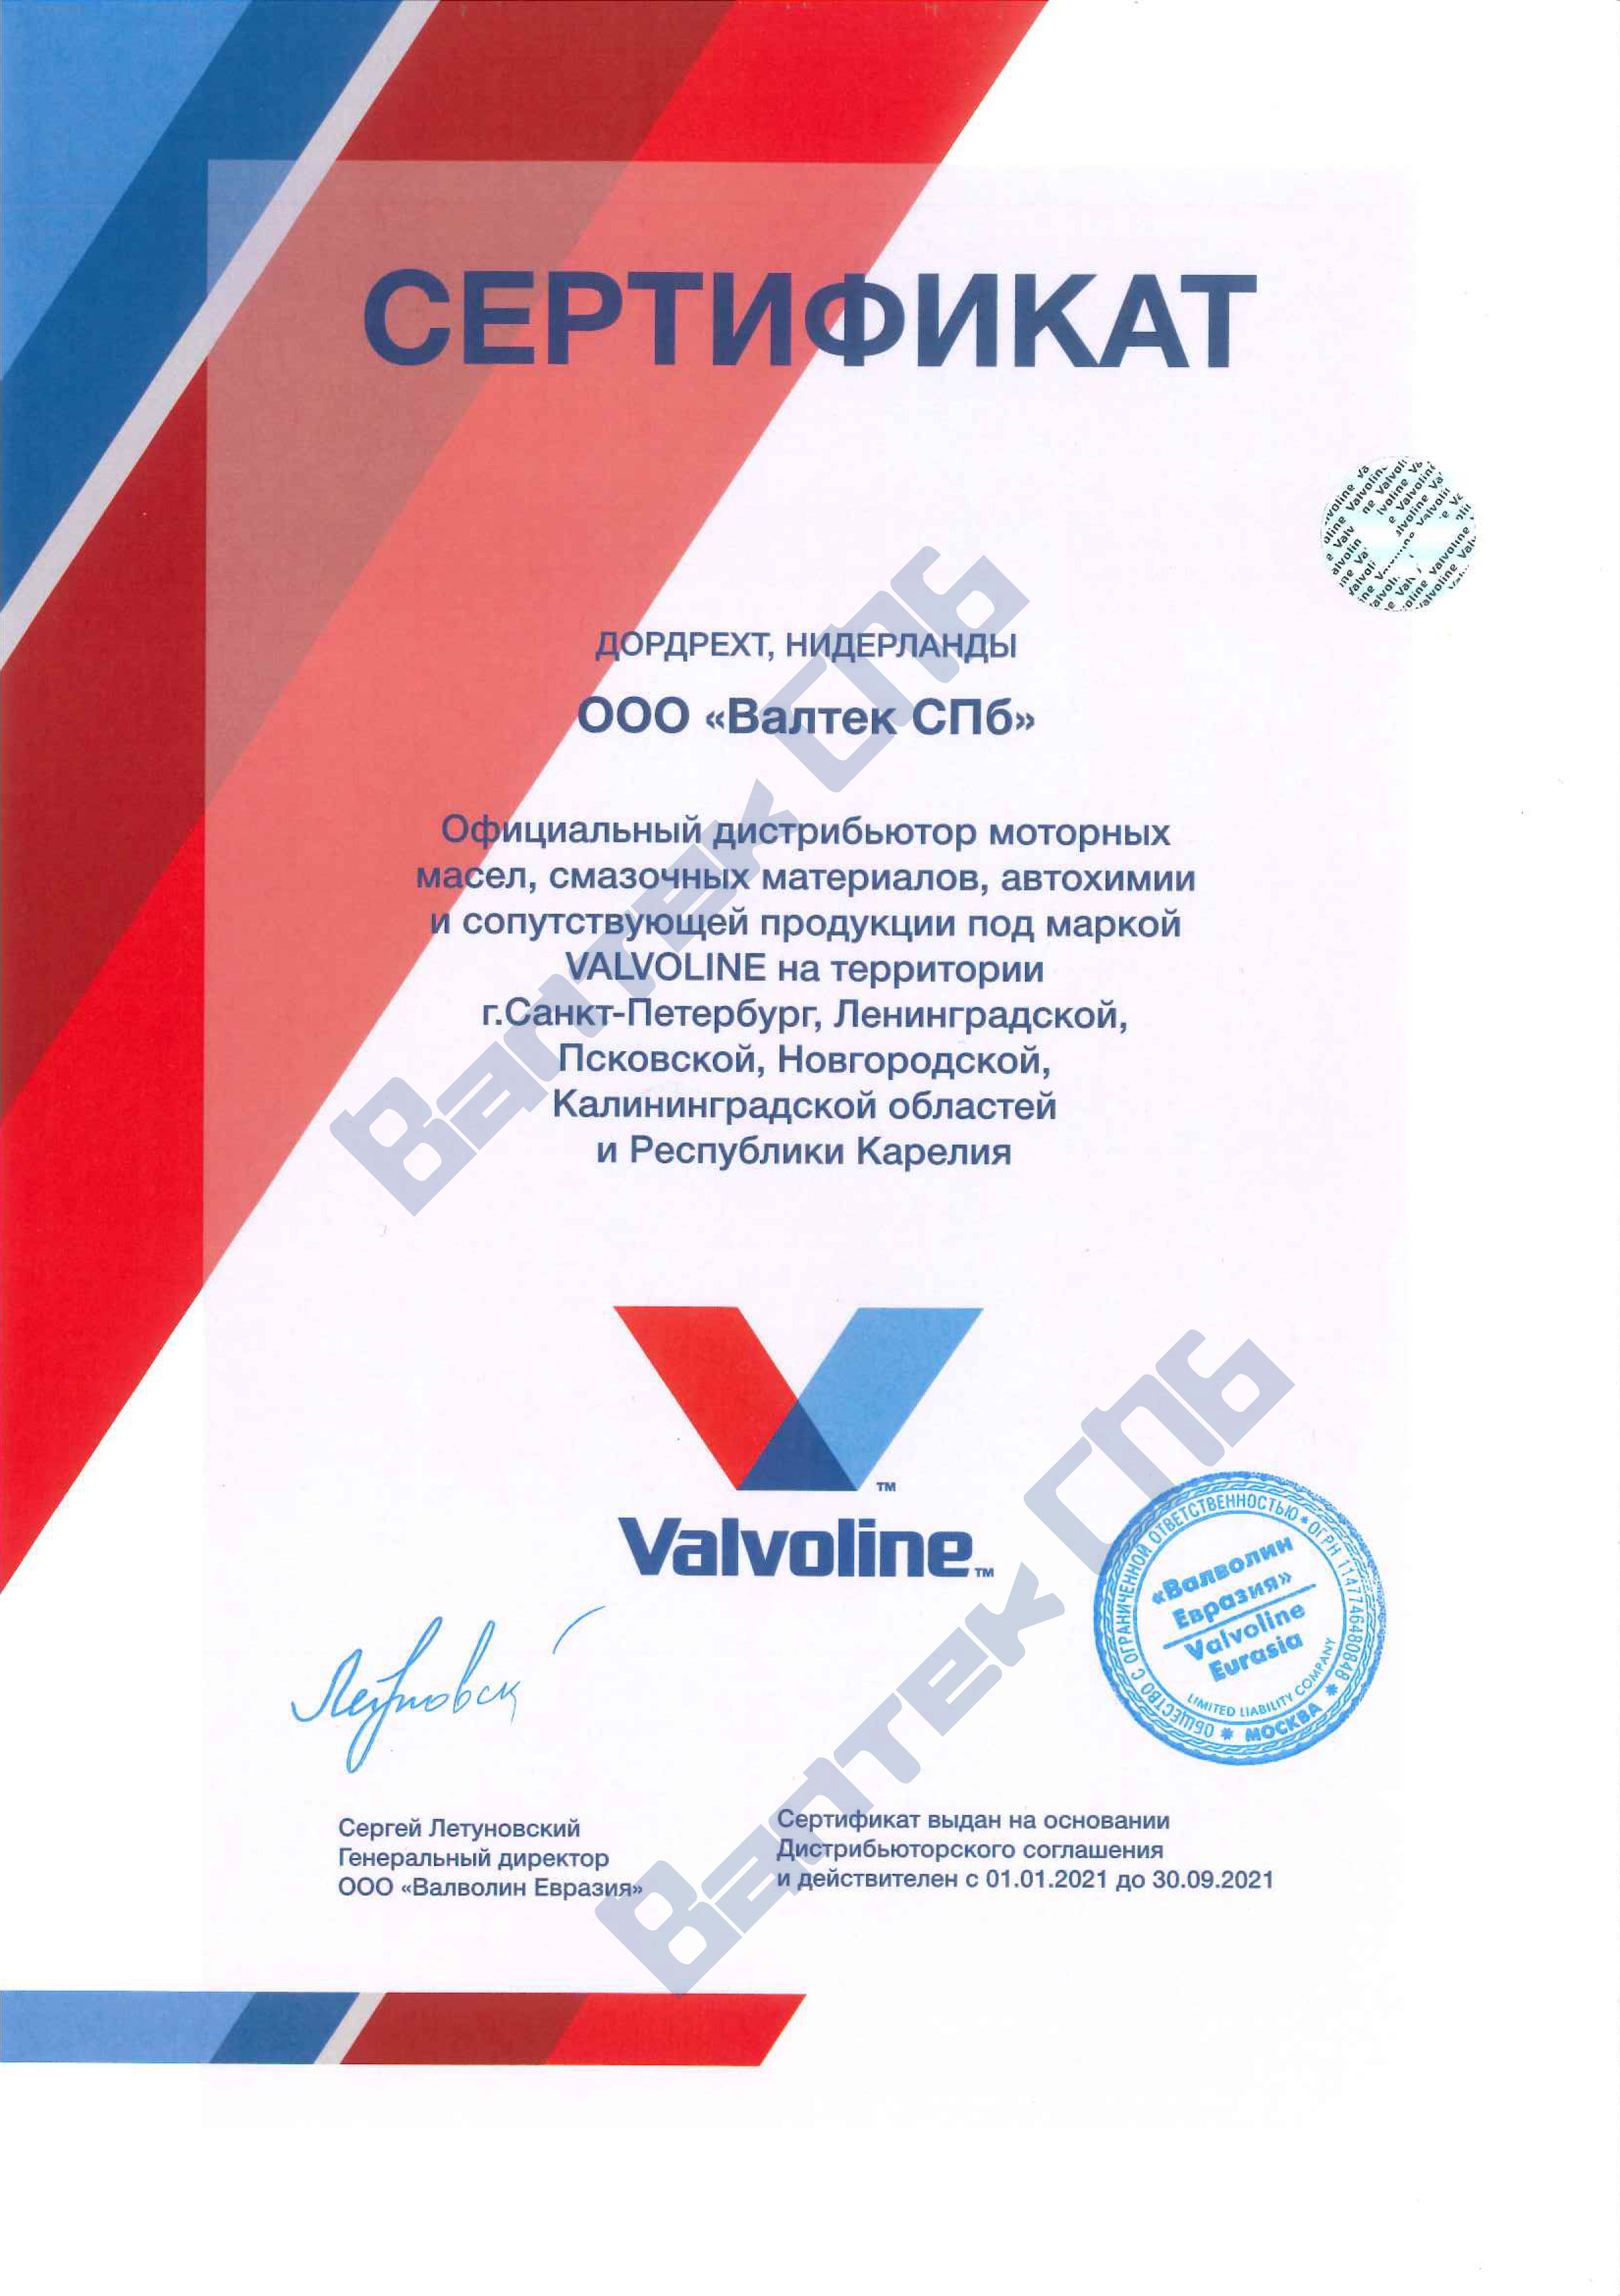 Сертификат официального дистрибьютора Valvoline